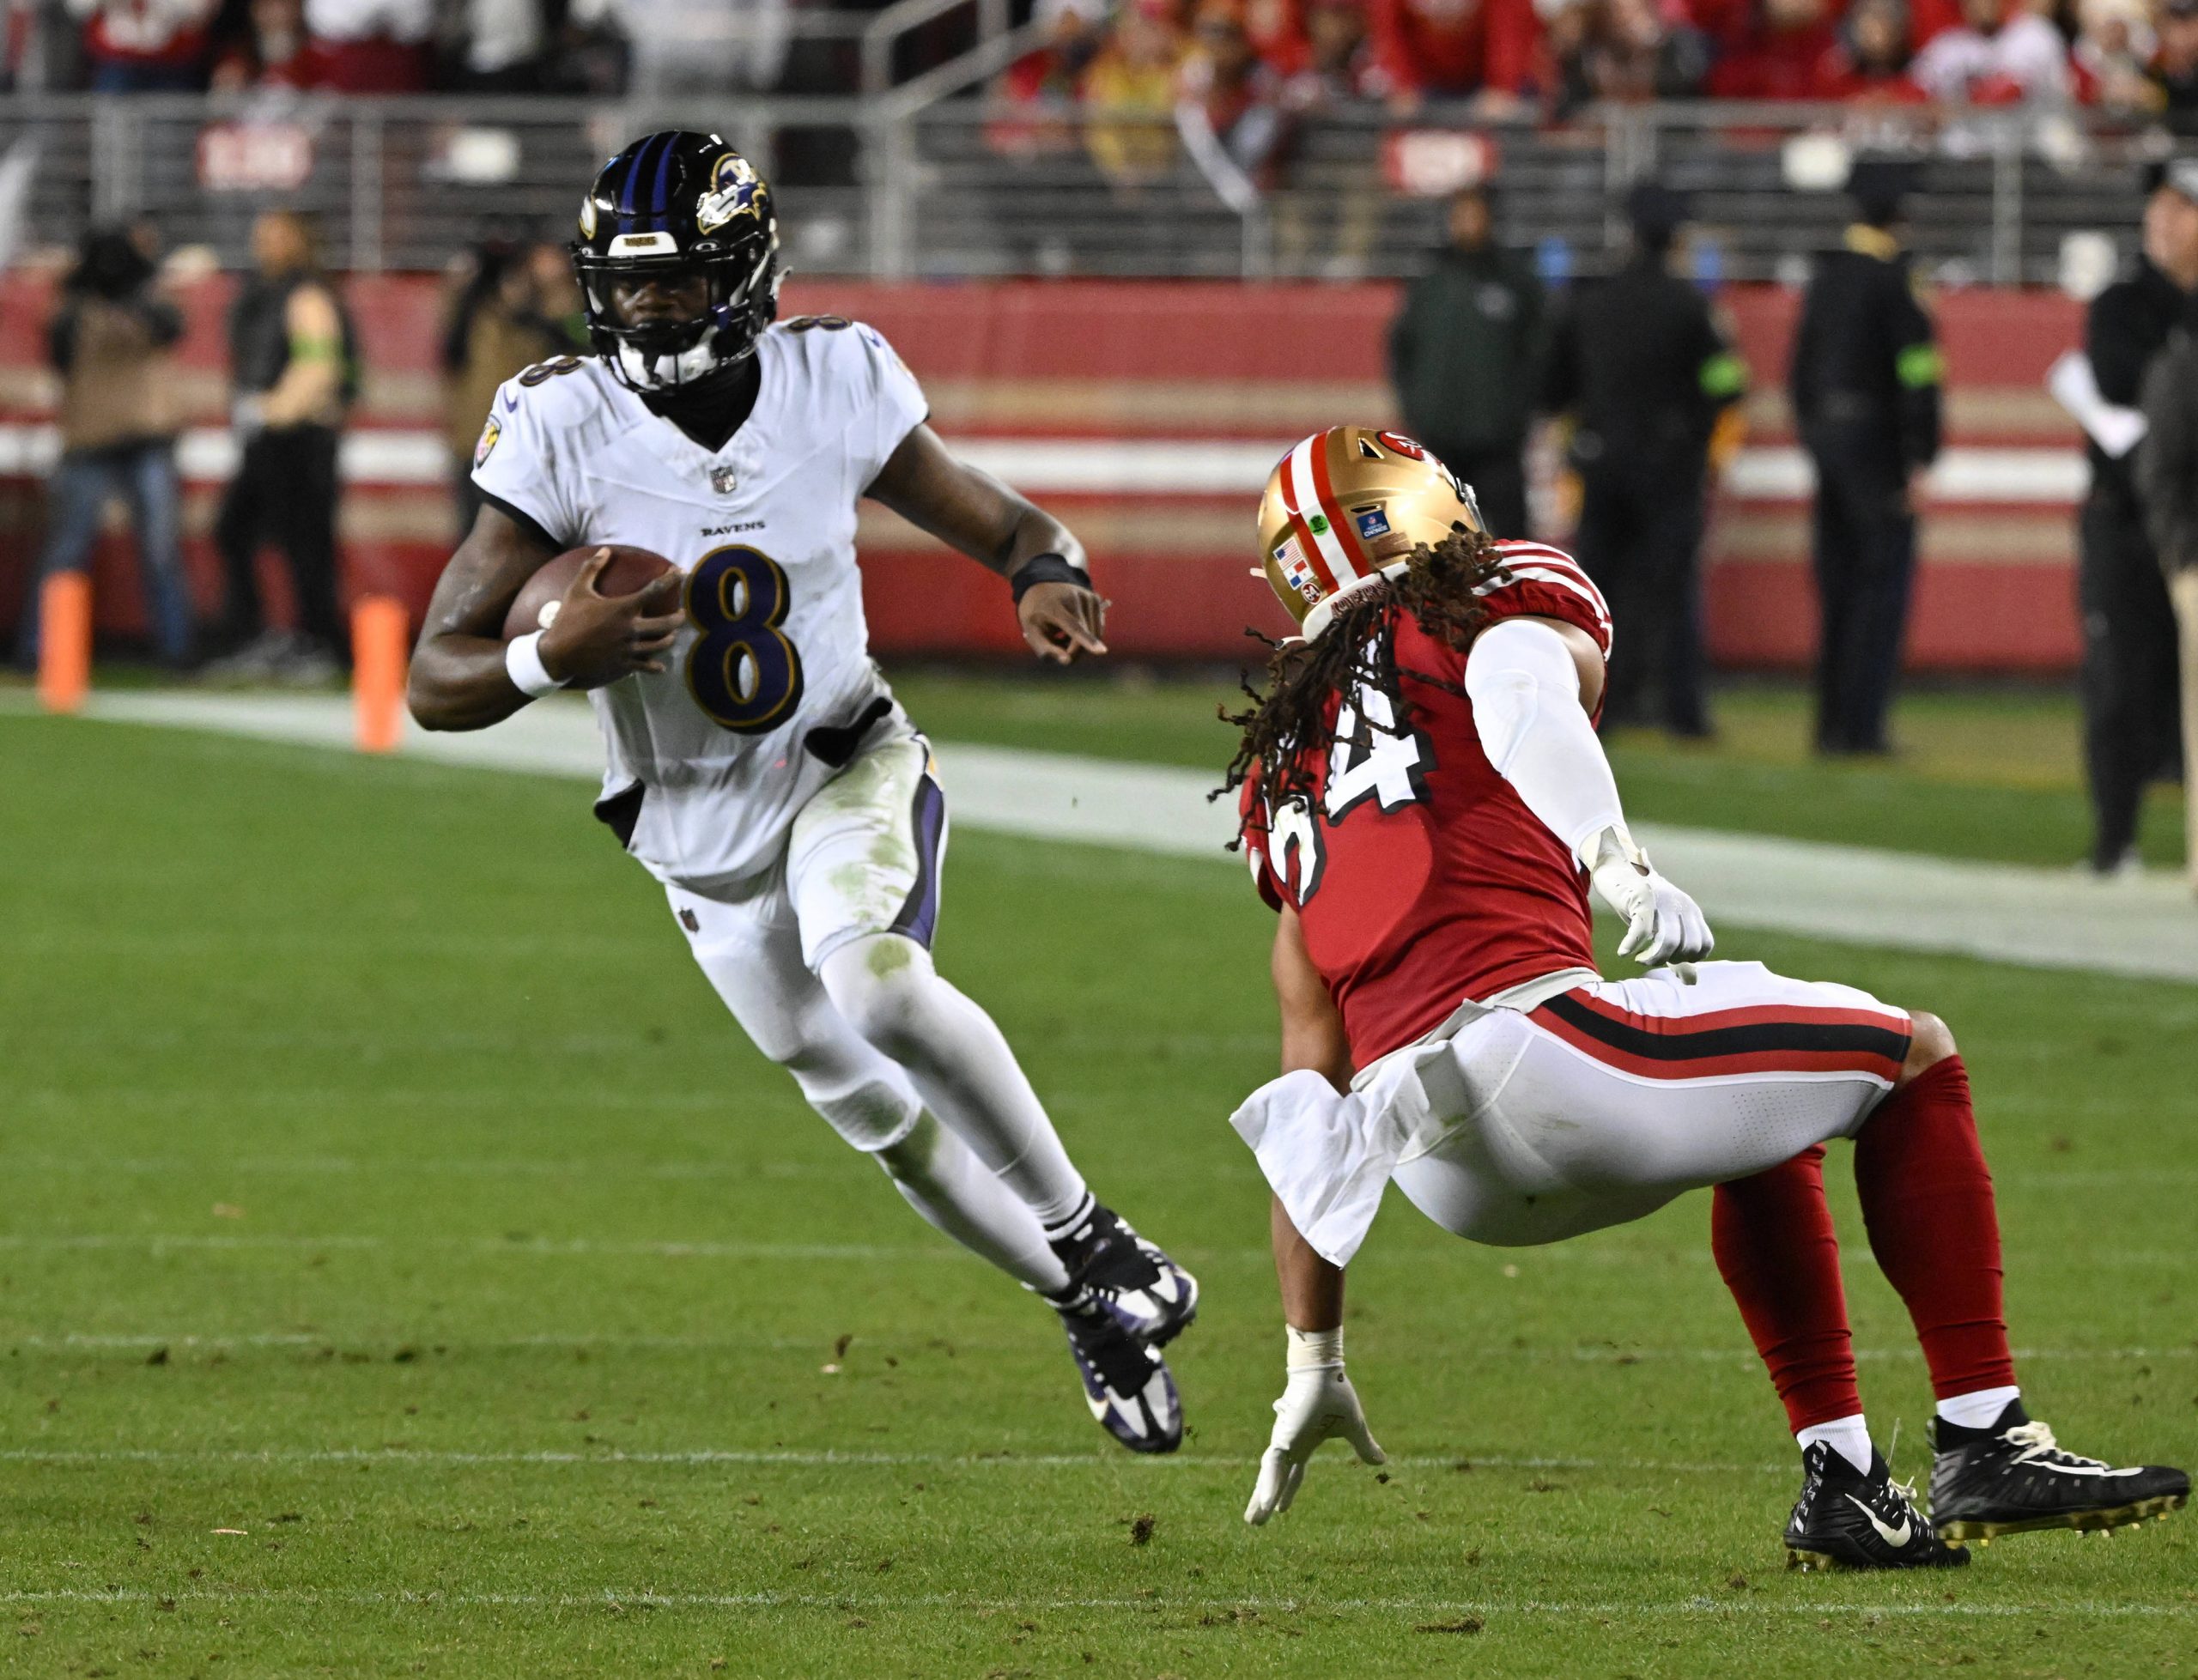 FootballR - NFL - Lamar Jackson - Die Baltimore Ravens und die San Francisco 49ers stehen sich in einem mit Spannung erwarteten Spiel gegenüber. Dieses Duell sorgt aufgrund der überragenden Leistung für Spannung